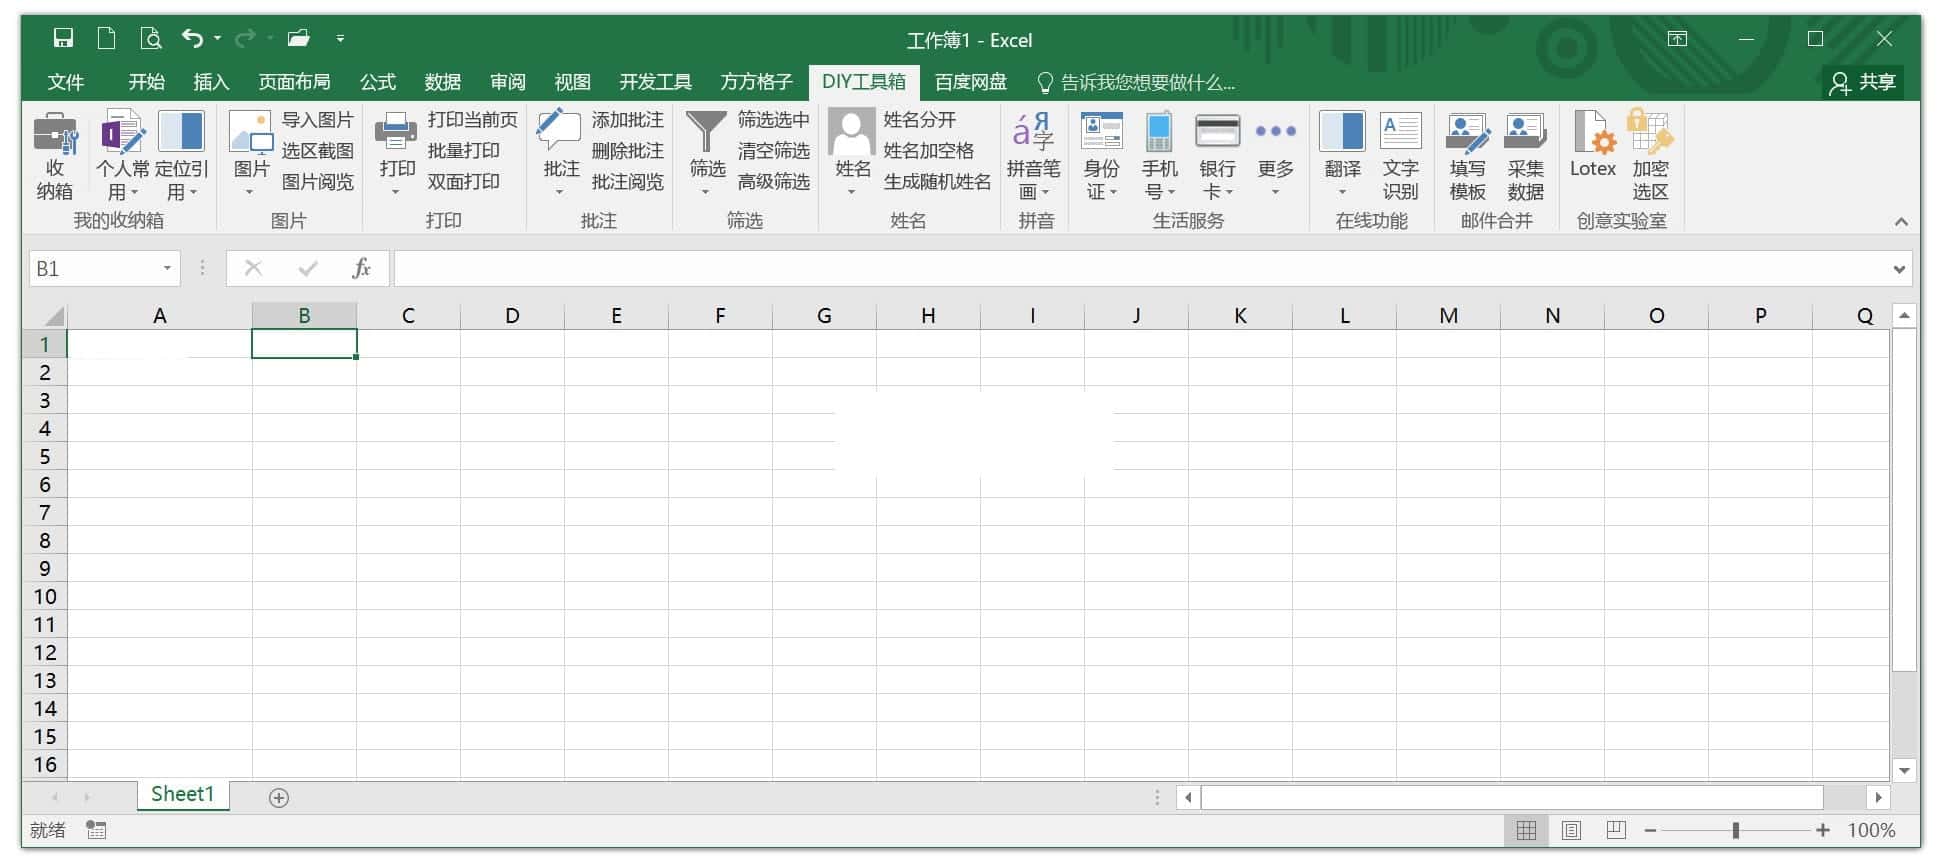 方方格子 Excel工具箱 v3.7.0.0 特别版 